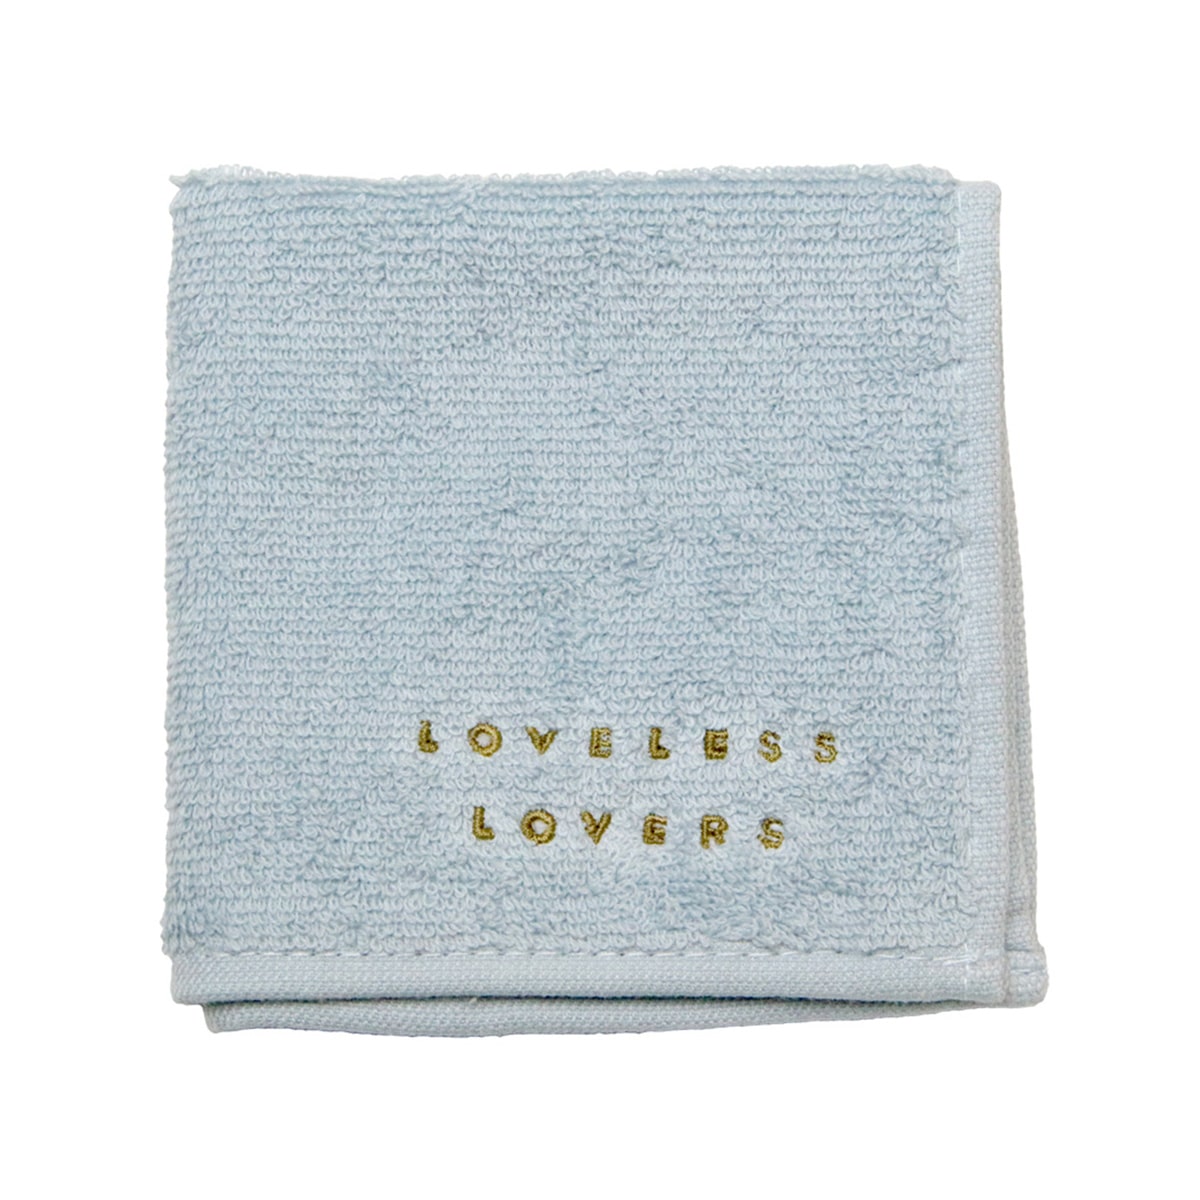 「アイのない恋人たち」LOVELESS LOVERS 刺繍ハンドタオル(2枚セット)